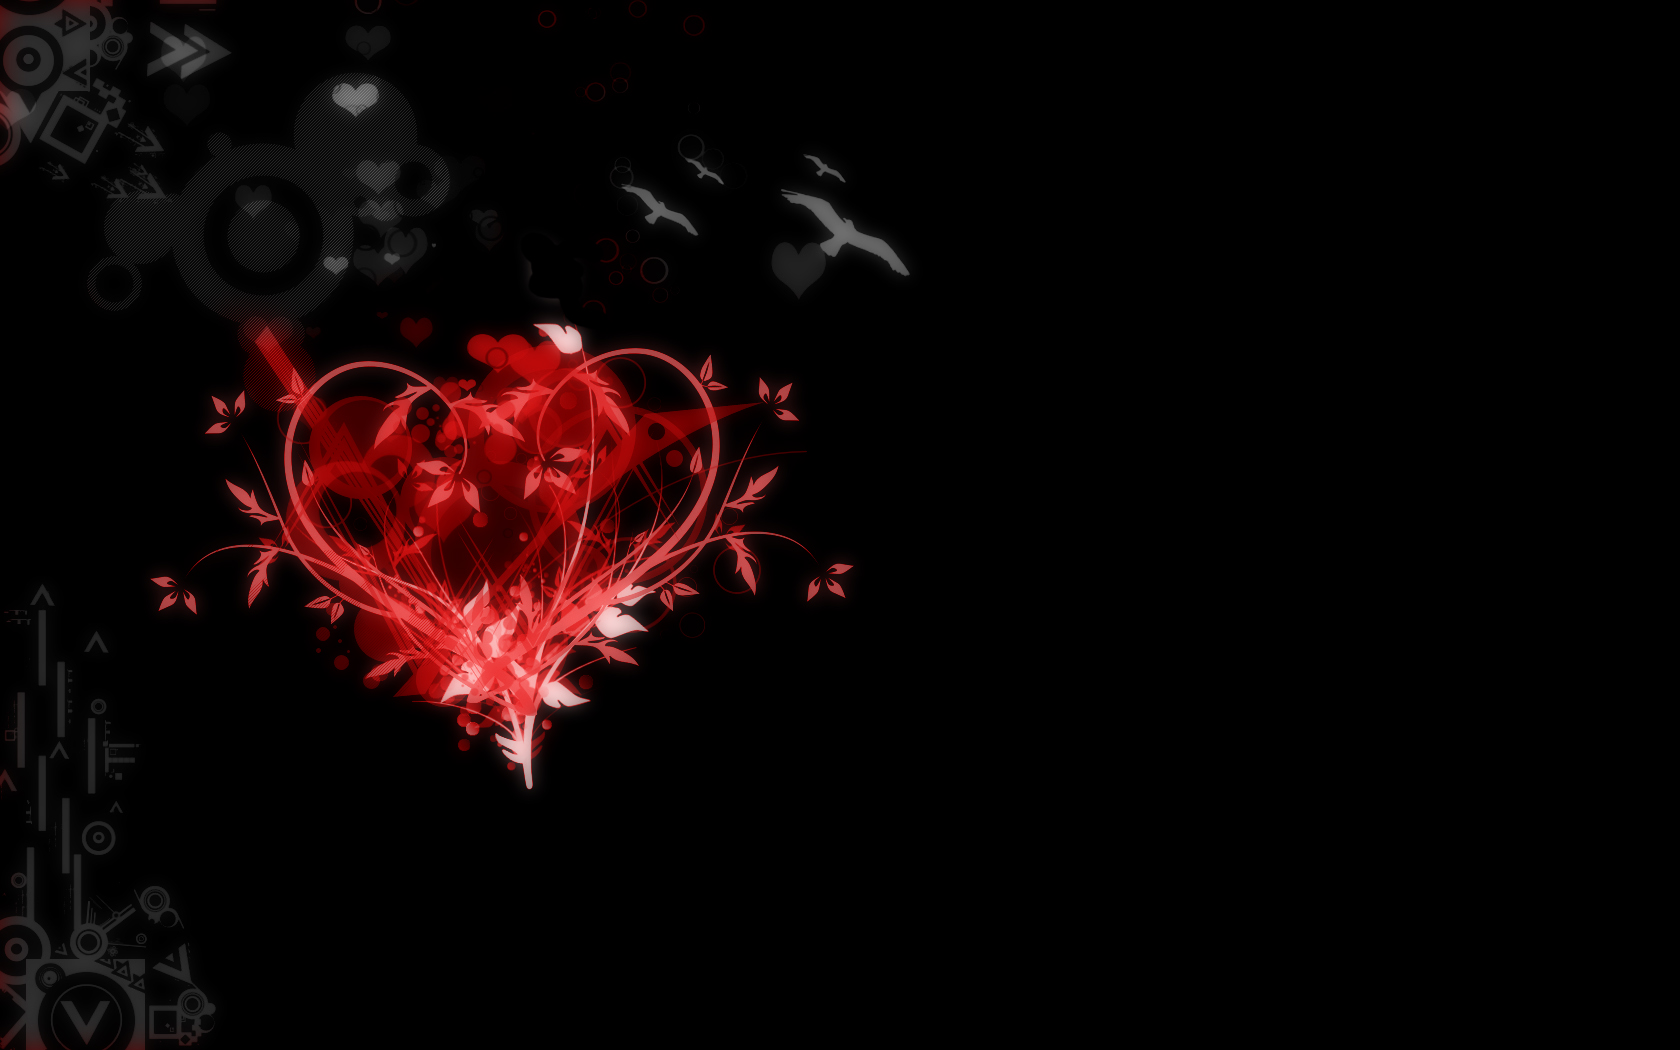 Red and Black Heart Wallpaper - WallpaperSafari.